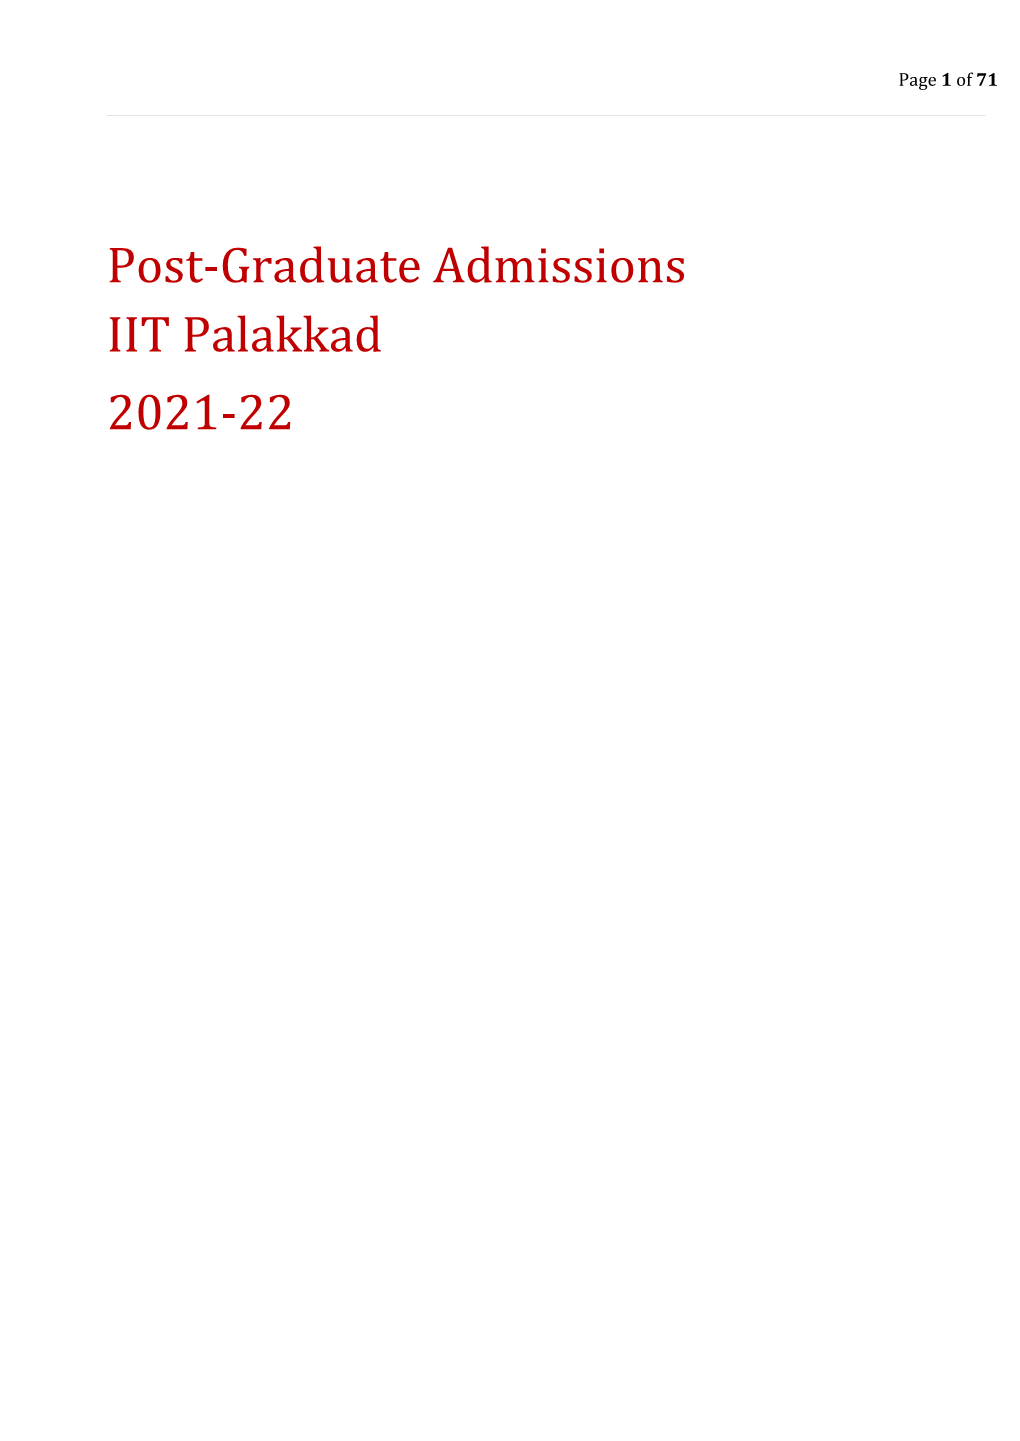 Post-Graduate Admissions IIT Palakkad 2021-22